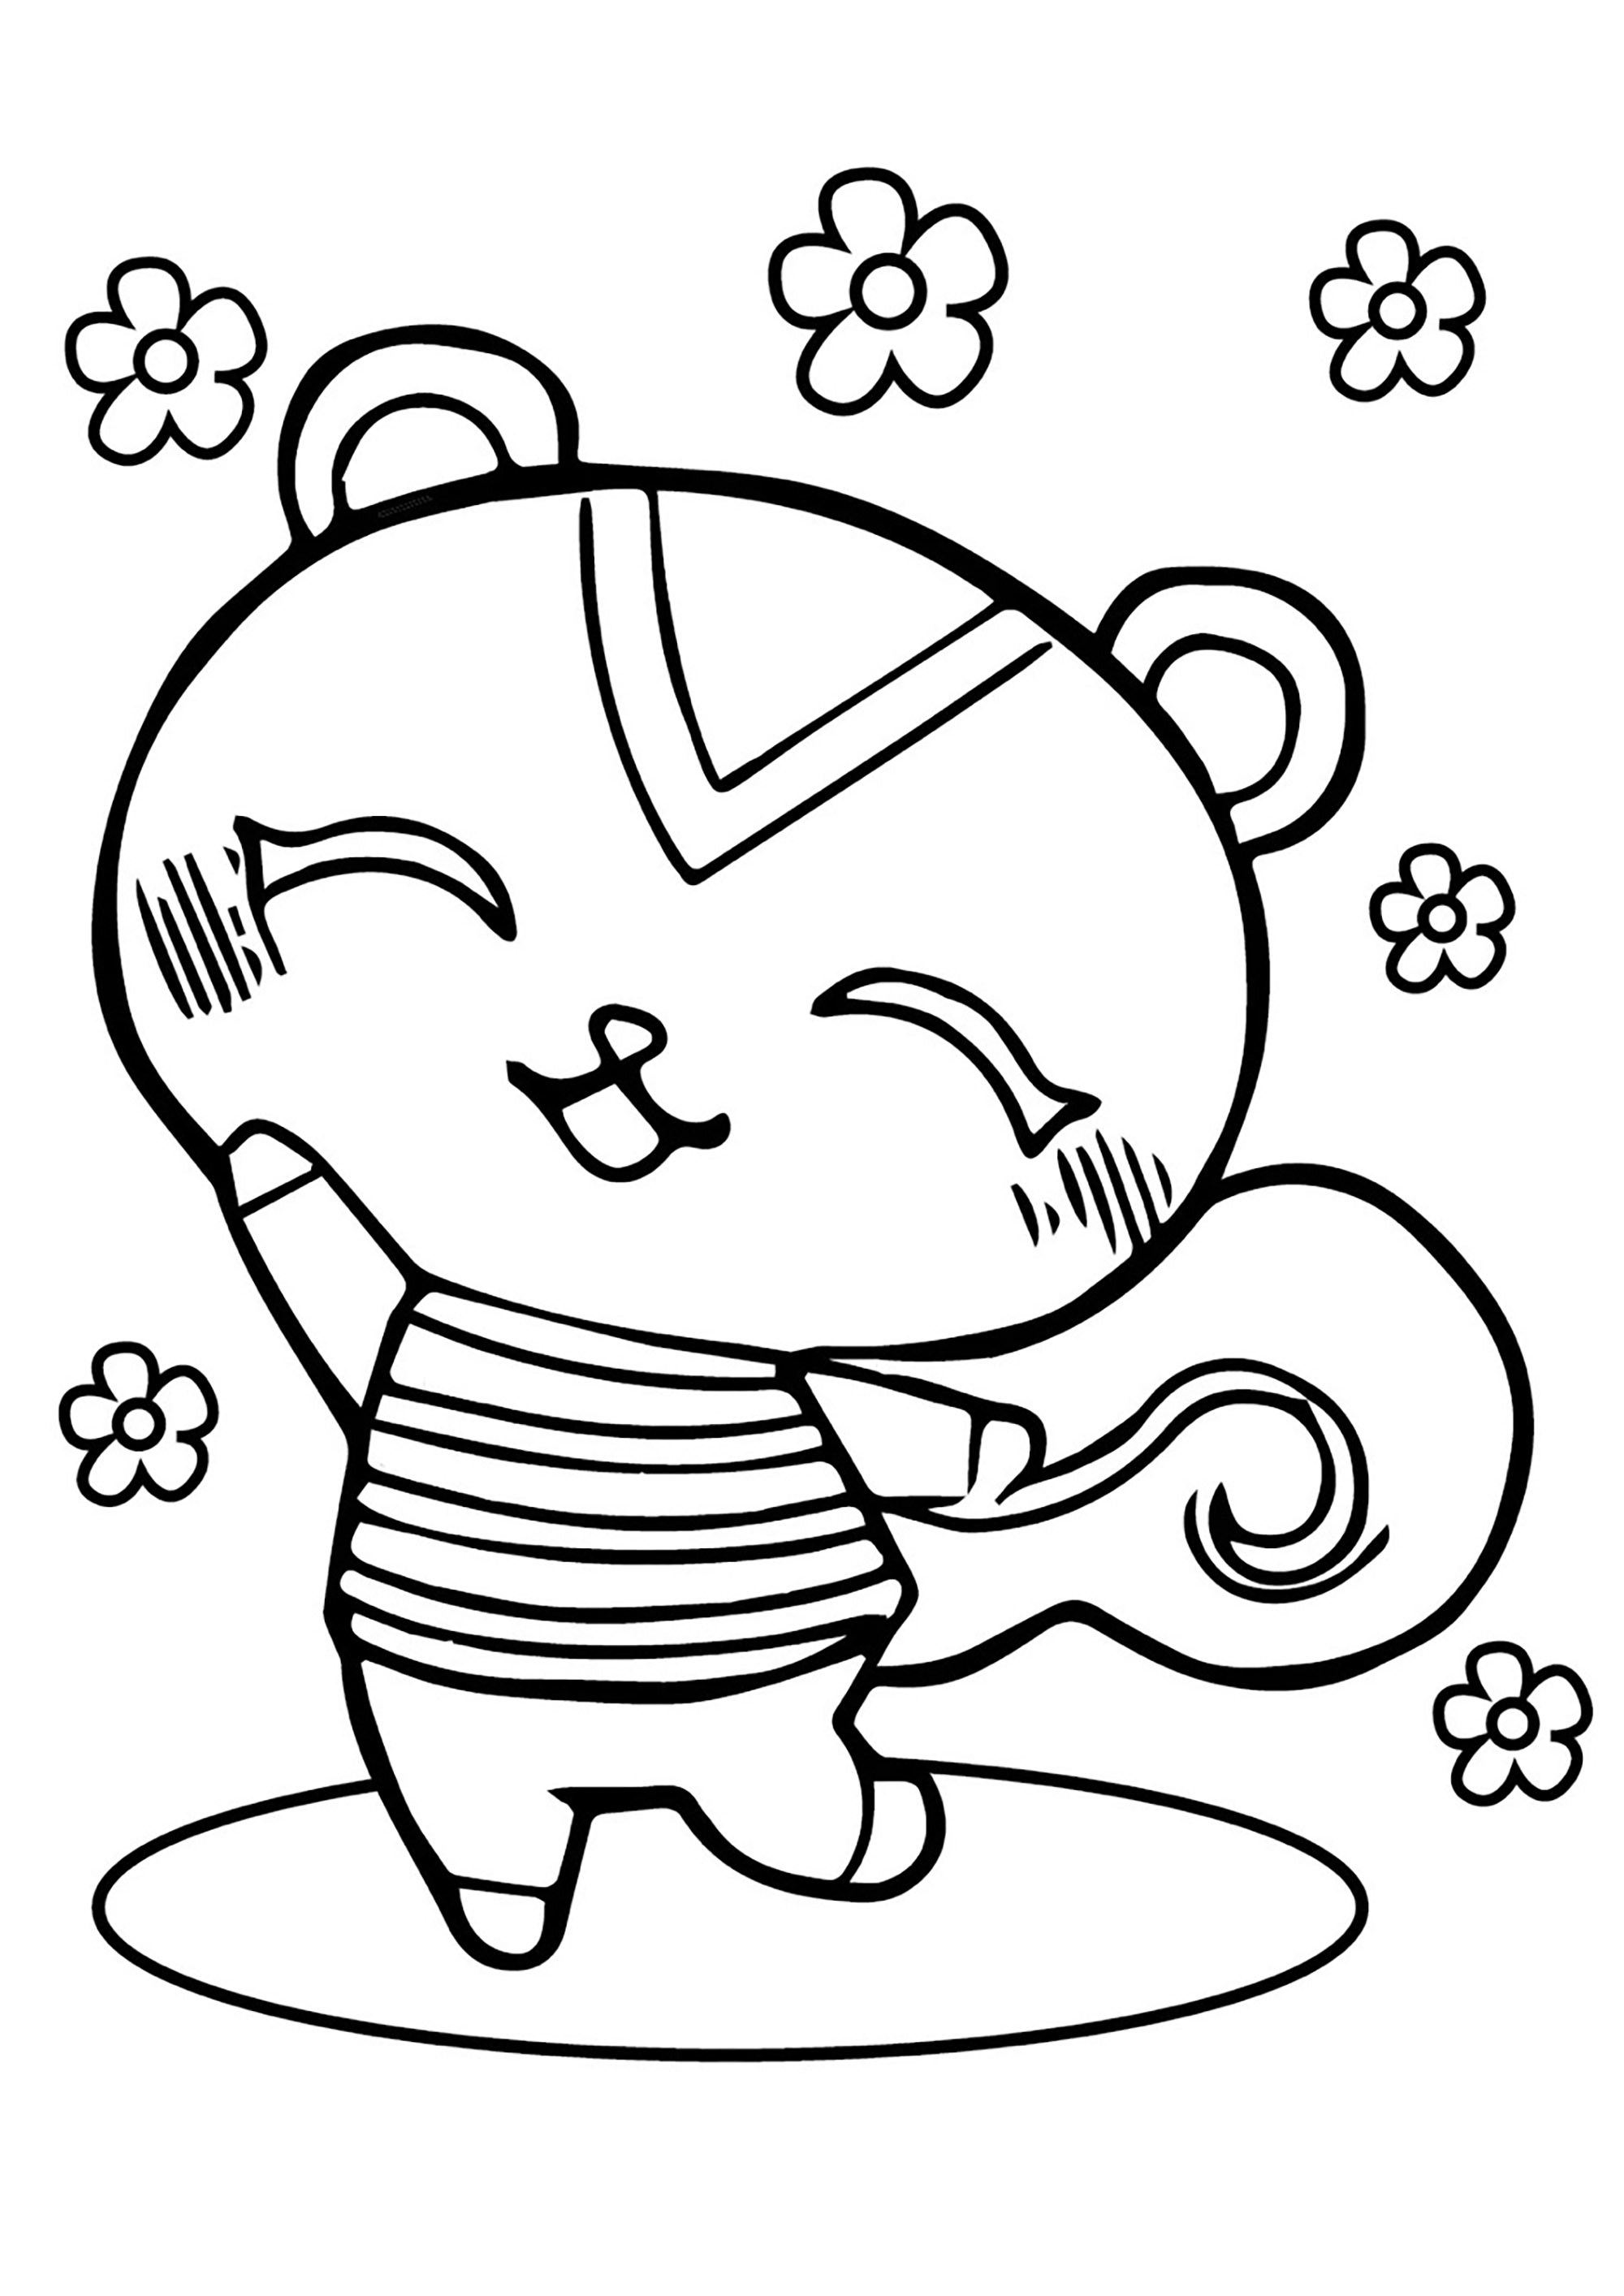 Dibujos para colorear gratis de Animal Crossing para imprimir y colorear